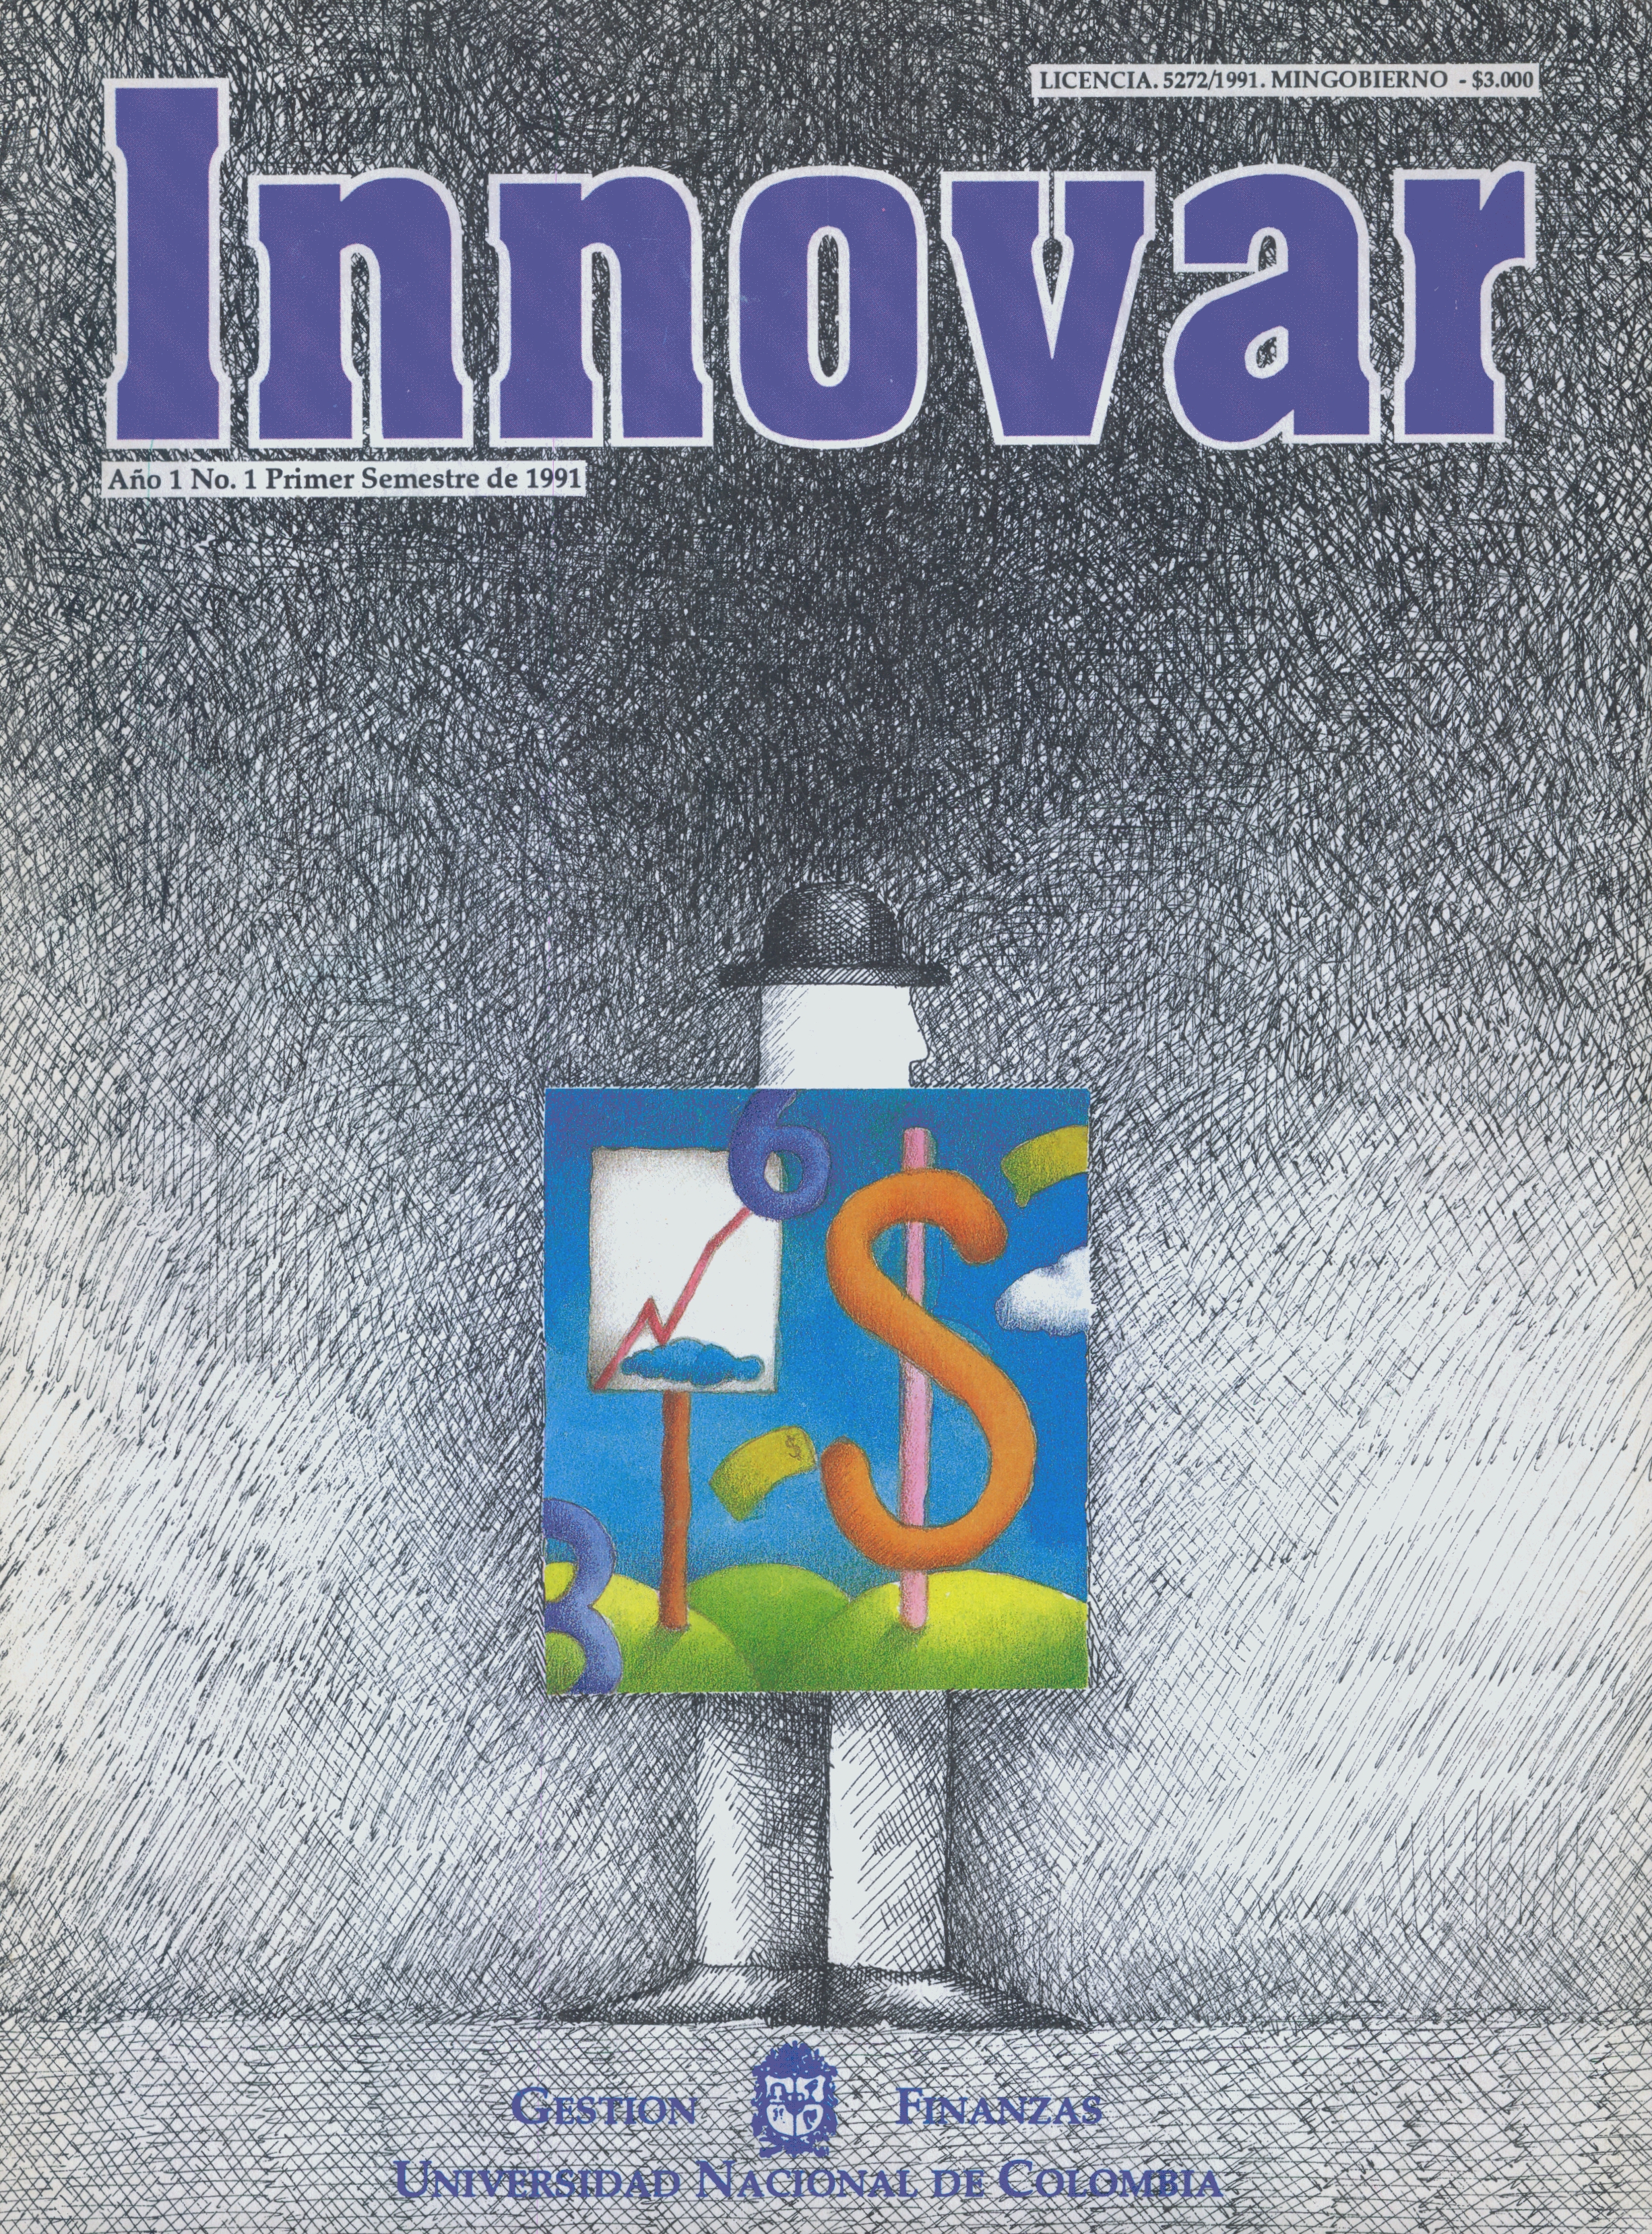 					Ver Vol. 1 Núm. 1 (1991)
				